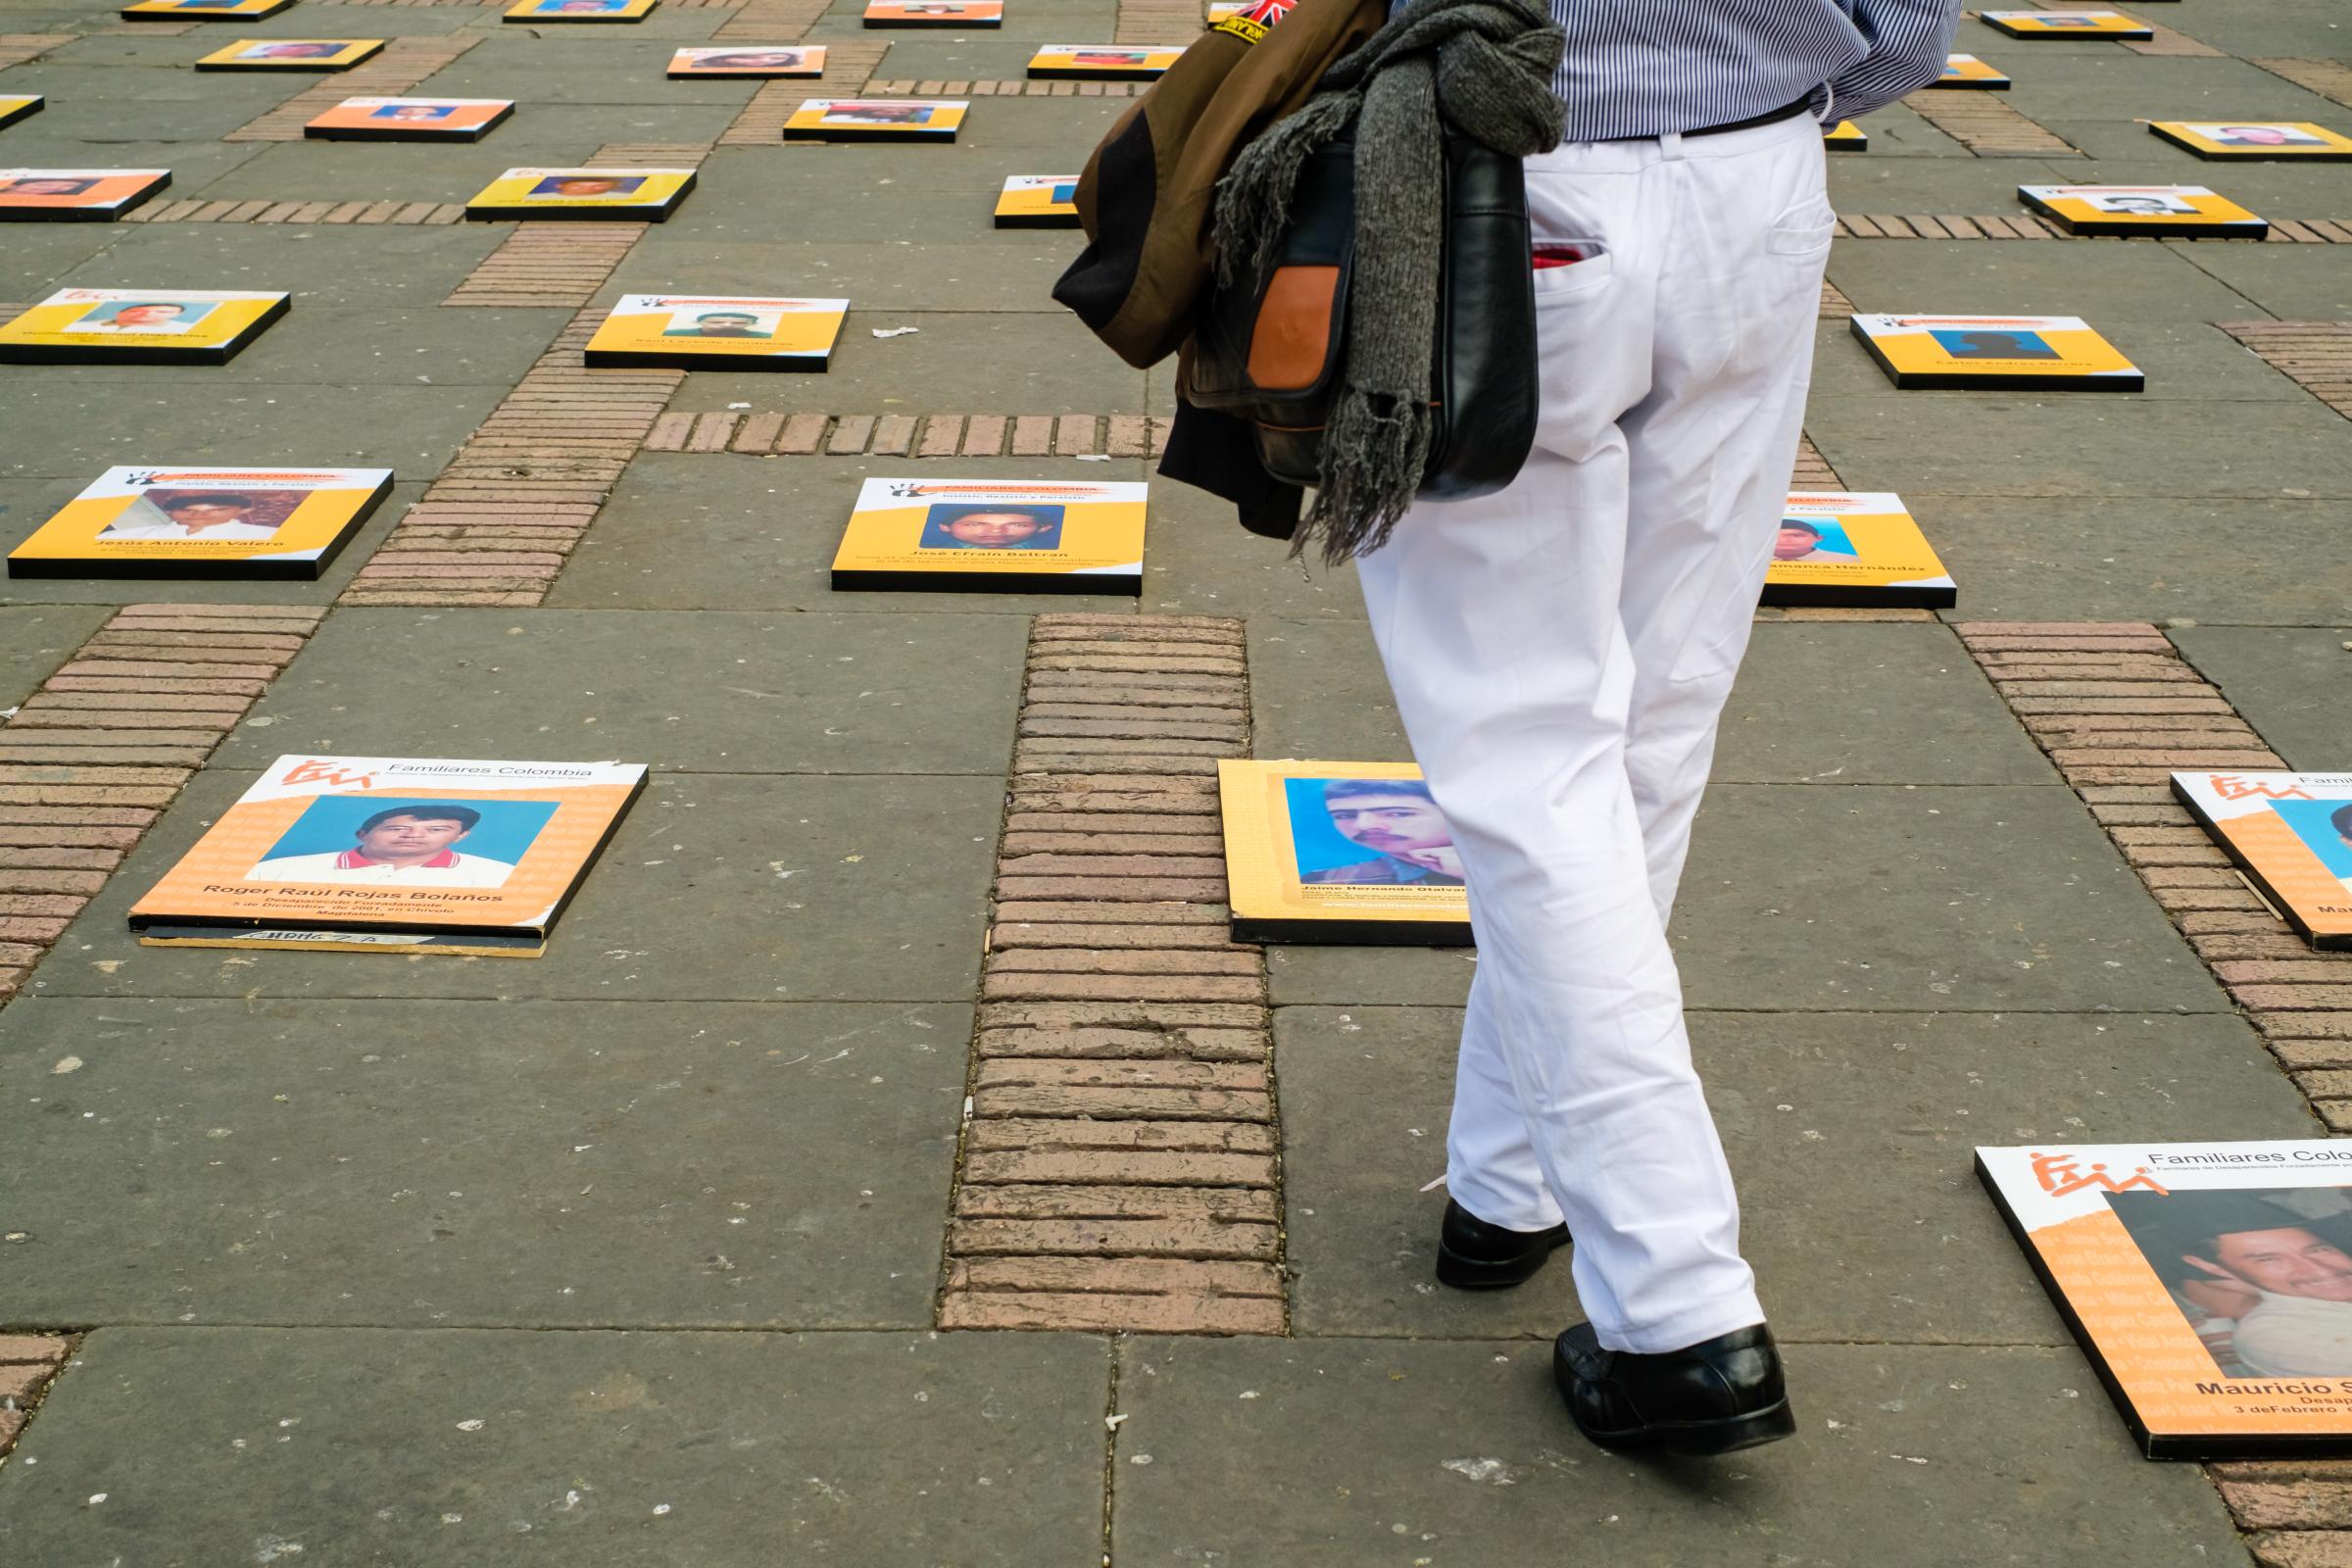 International Day of the Disappeared Bogota 2022 - Dia Internacional das Vitimas de Desaparecimento Forçado,...